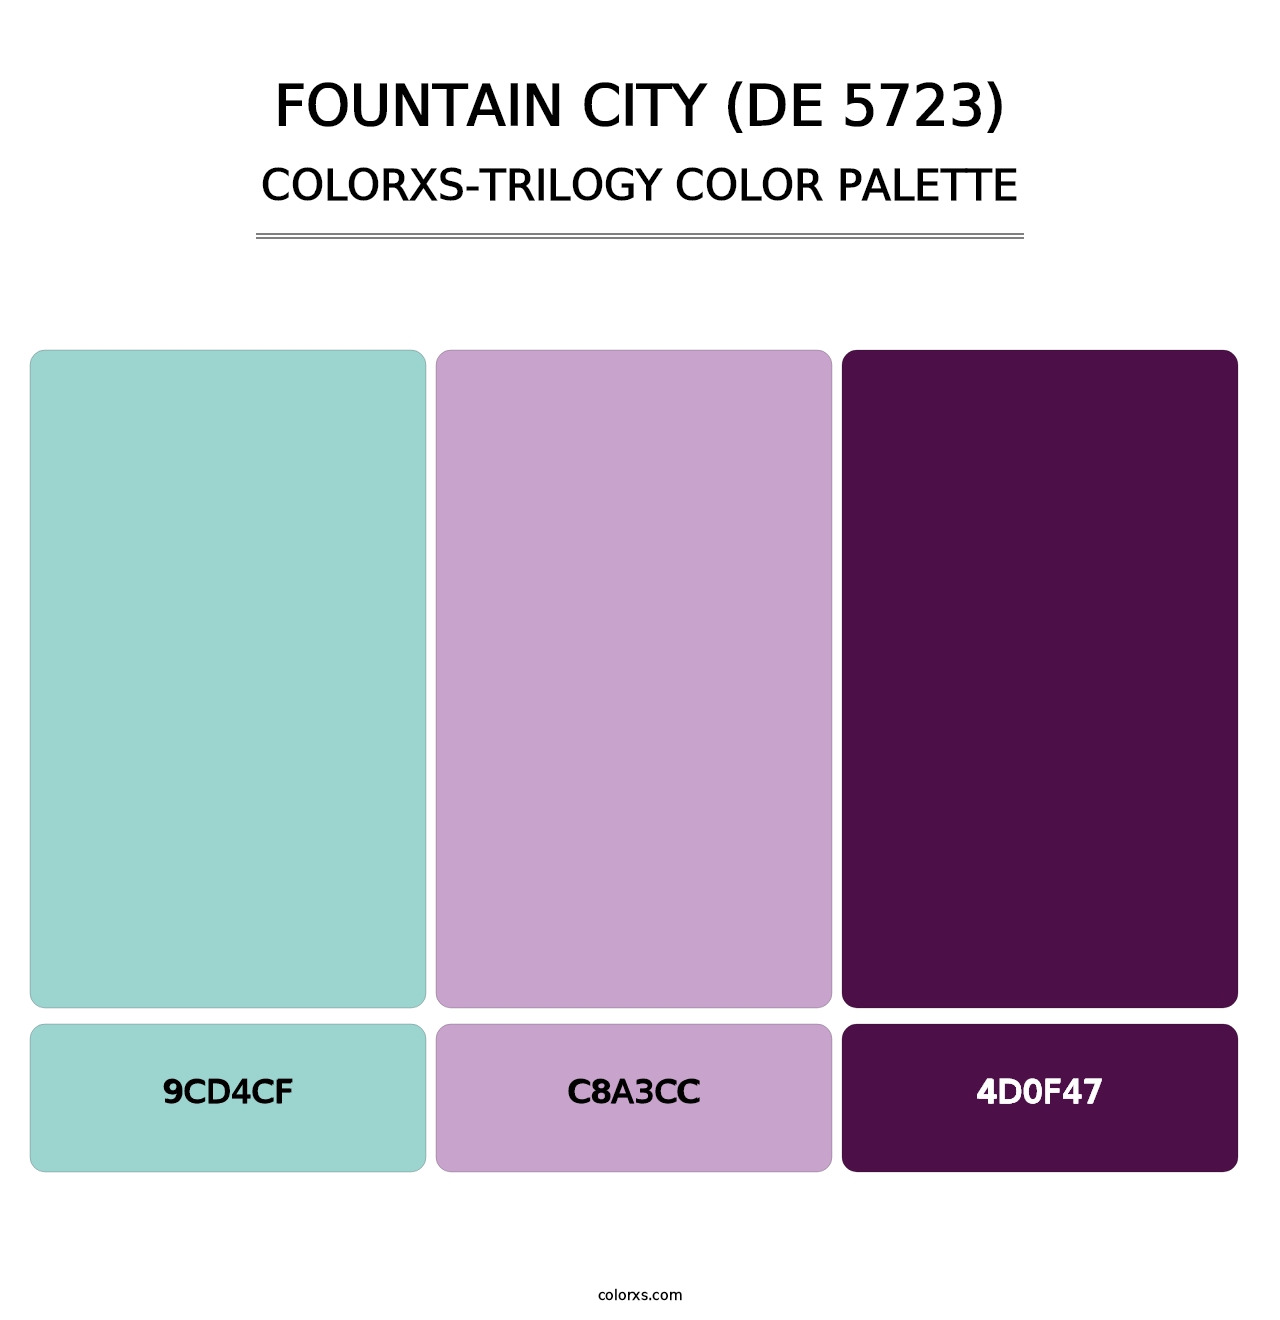 Fountain City (DE 5723) - Colorxs Trilogy Palette